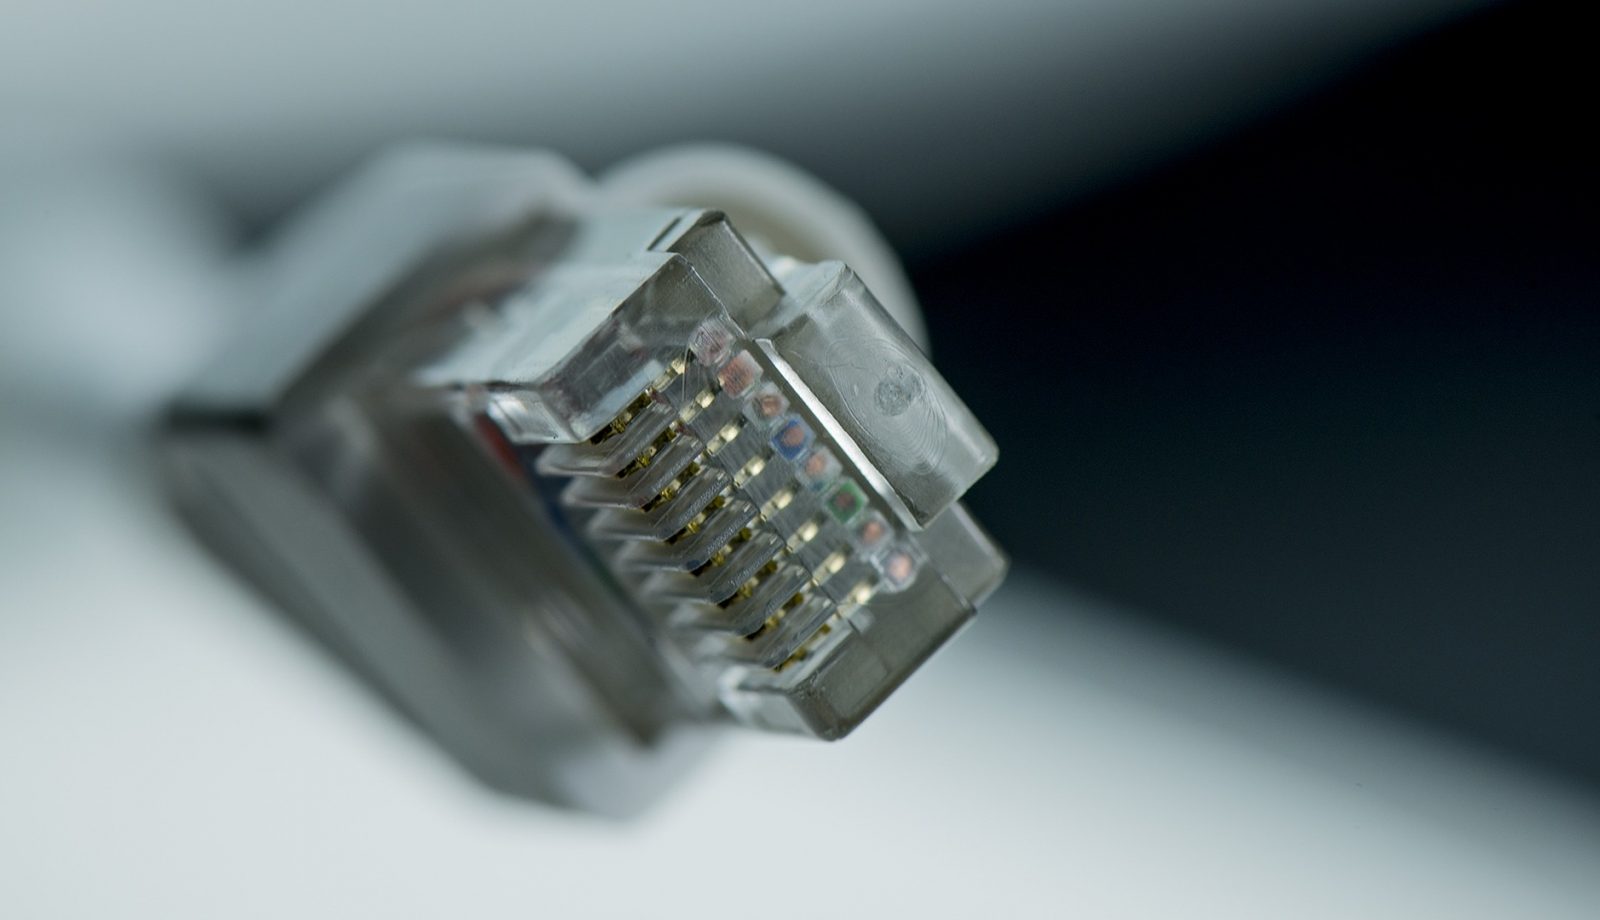 network-cable installation service in plano ifixdallas